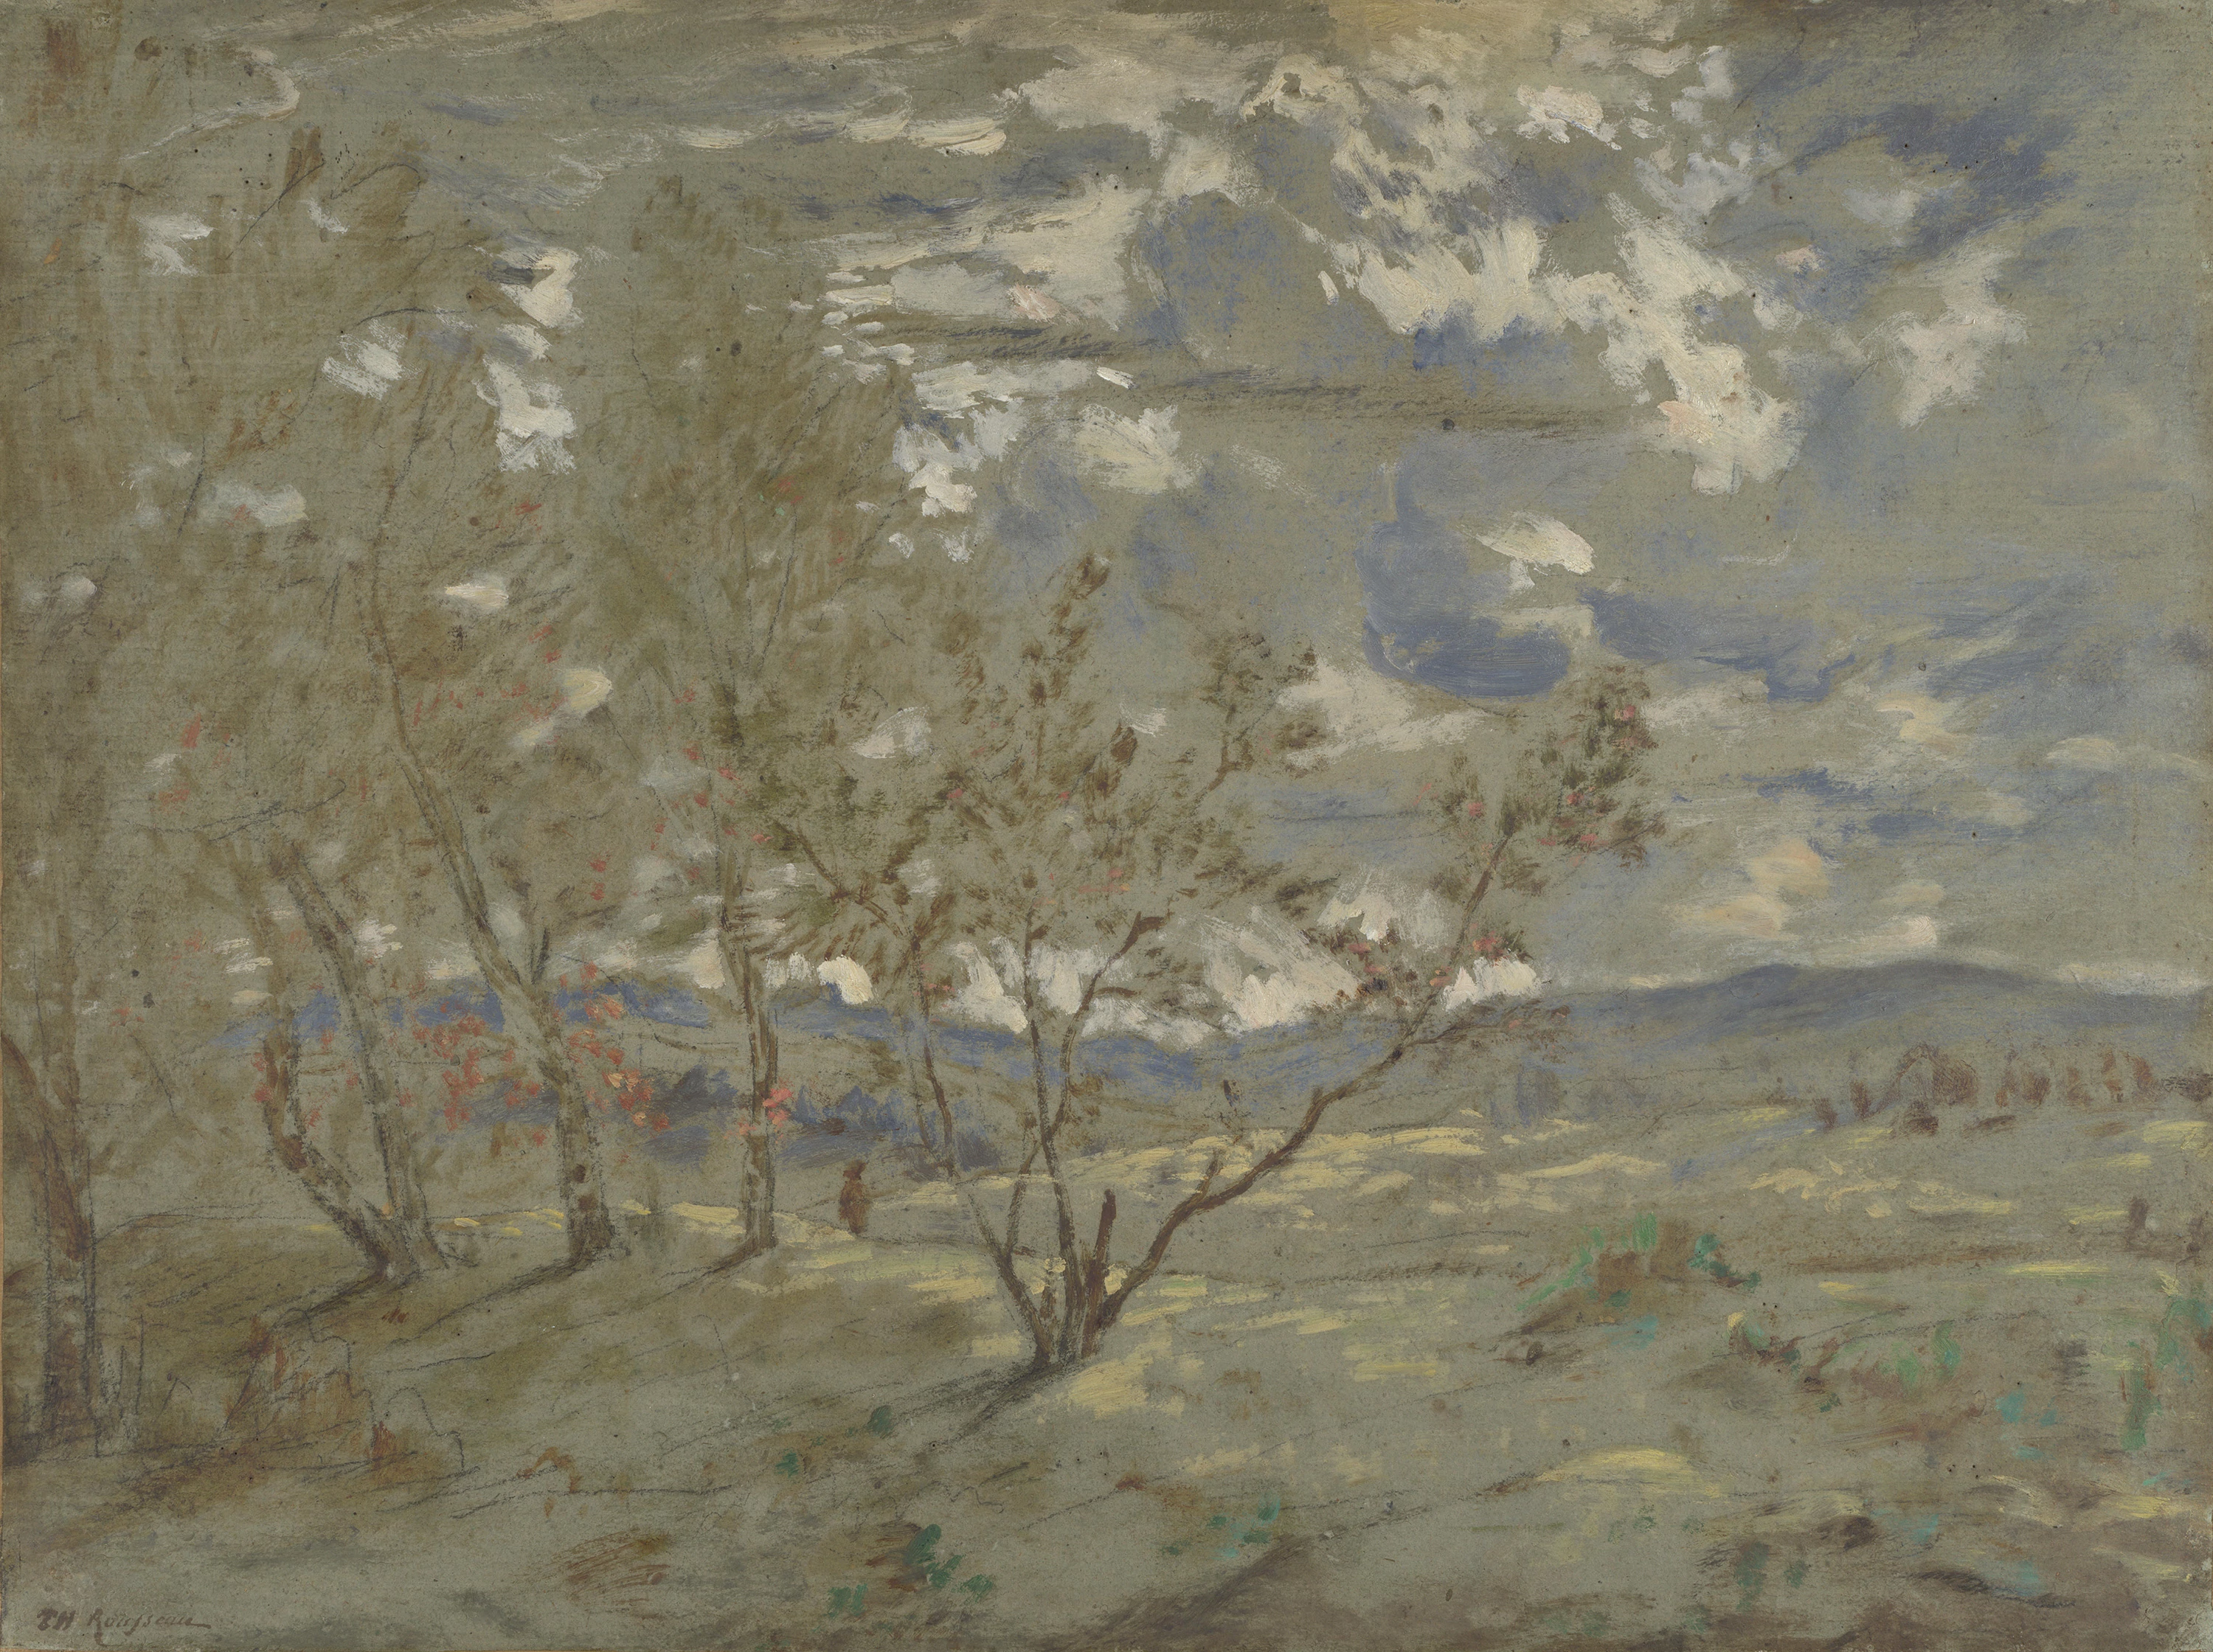 Landscape Sketch, Théodore Rousseau